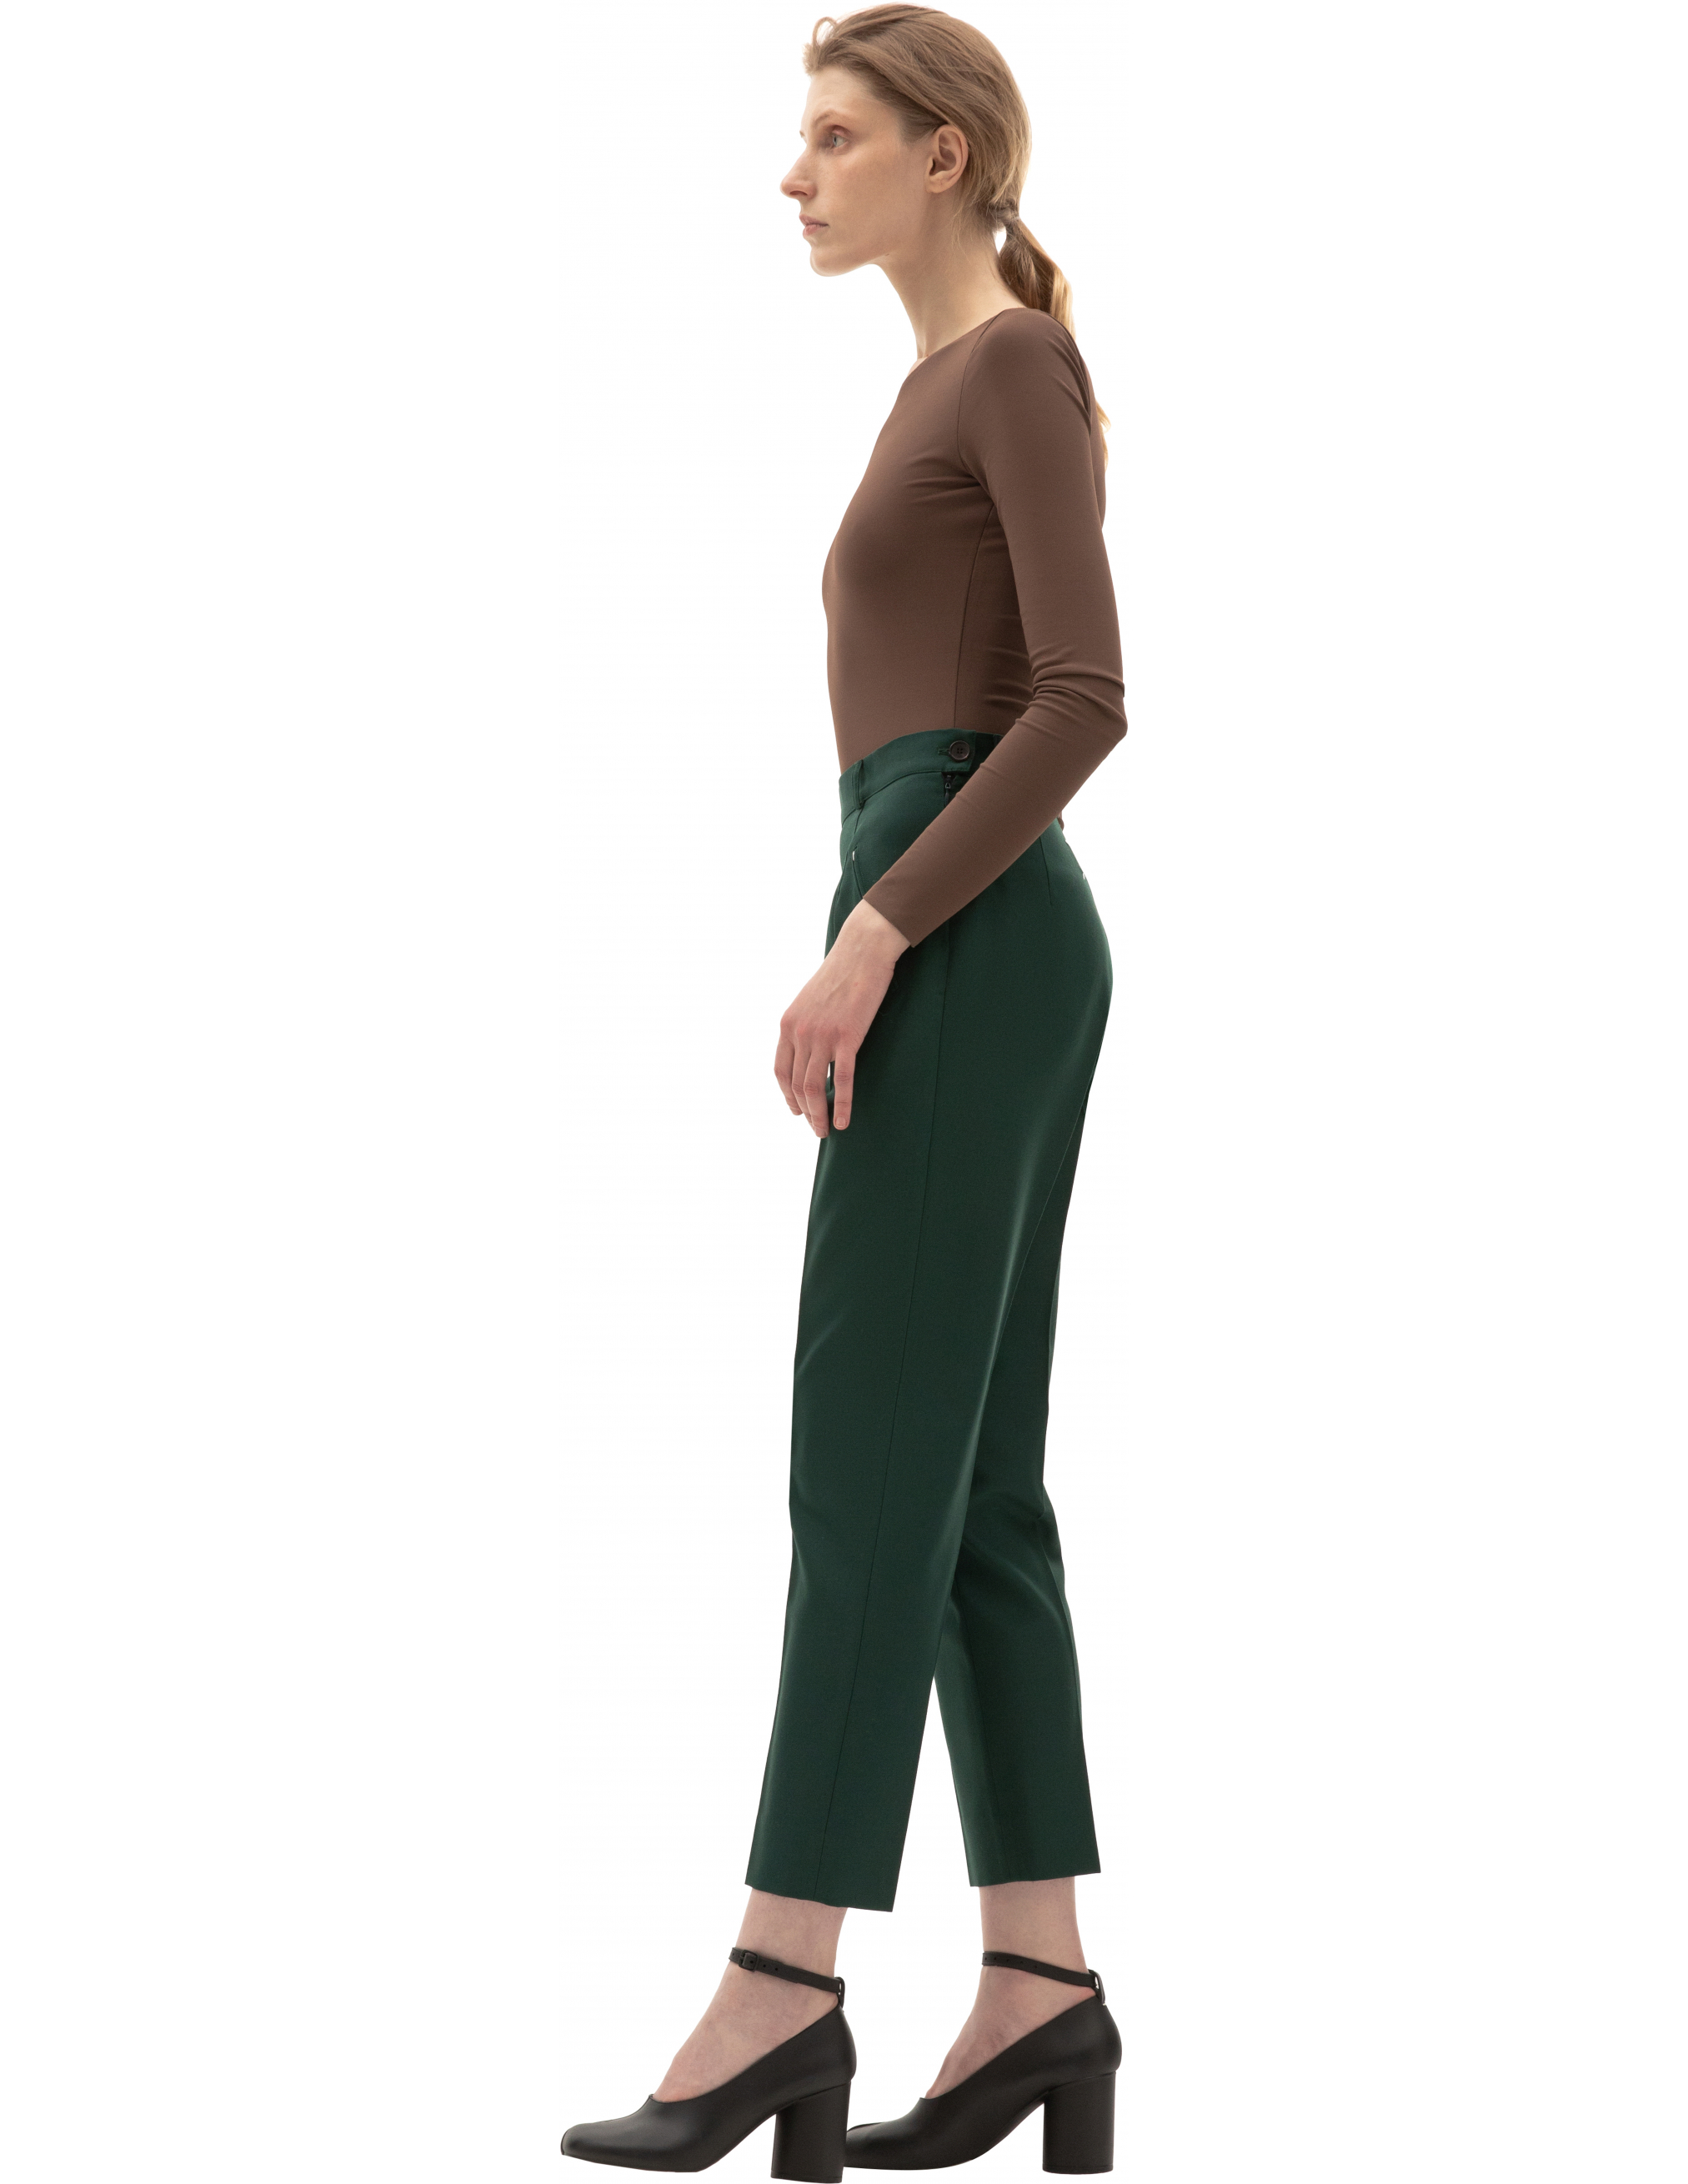 Зеленые брюки с высокой посадкой - Maison Margiela S51KA0530/S53220/632 Фото 2